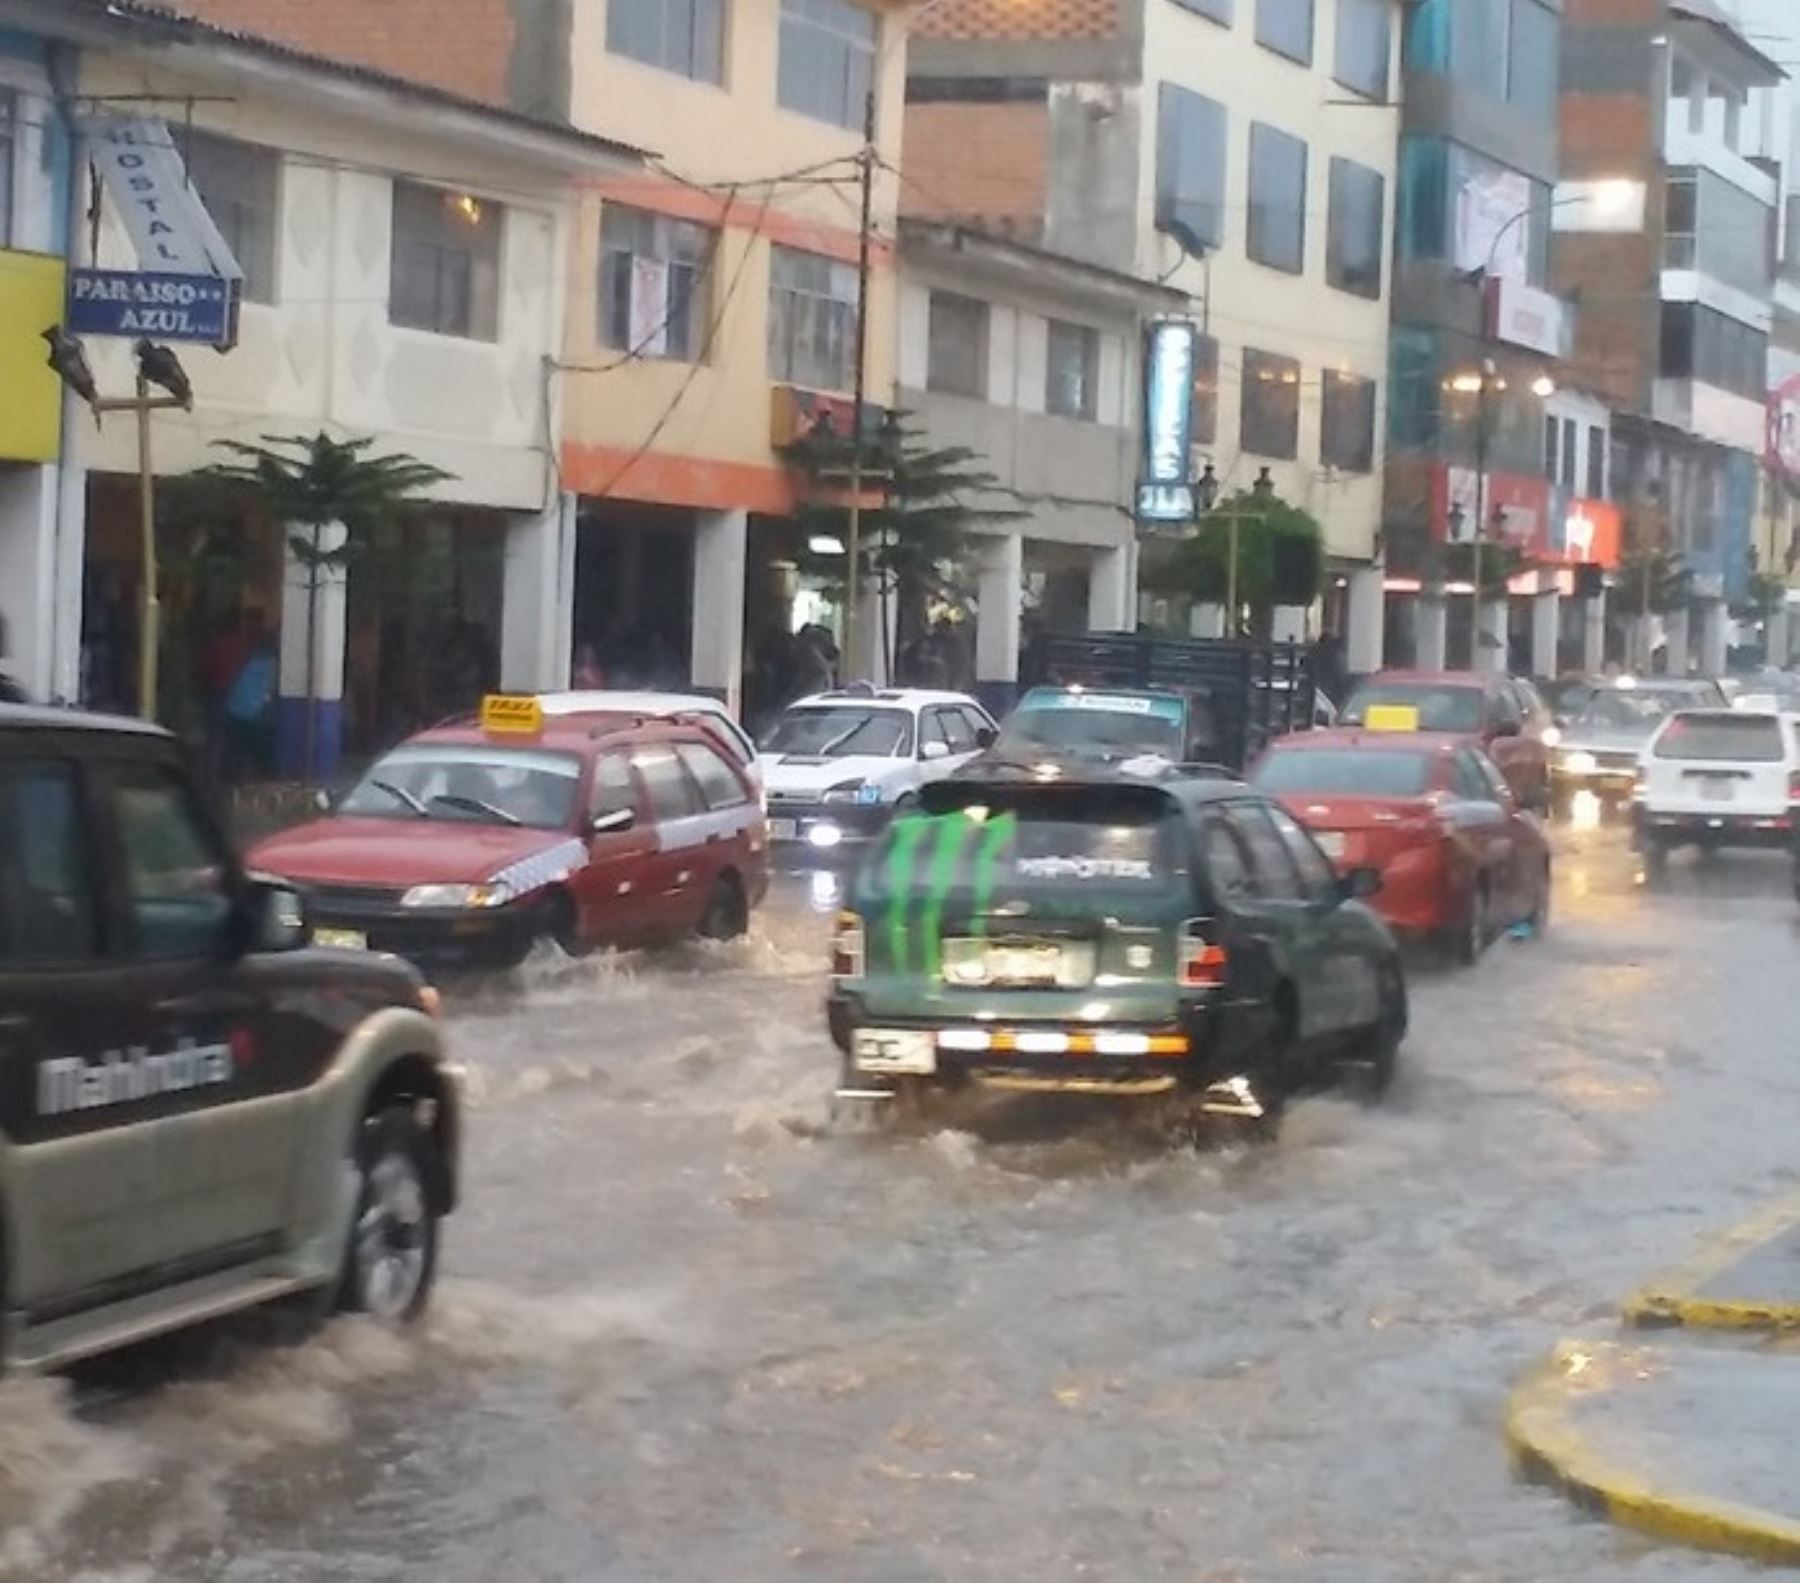 El distrito de Cajamarca, ubicado en la provincia y región del mismo nombre, soportó en las últimas 24 horas un día “extremadamente lluvioso” y el mayor acumulado en todo el país con un valor de 51.8 milímetros de agua, según la estación Granja Porcón del Senamhi, informó dicha institución al COEN Defensa.